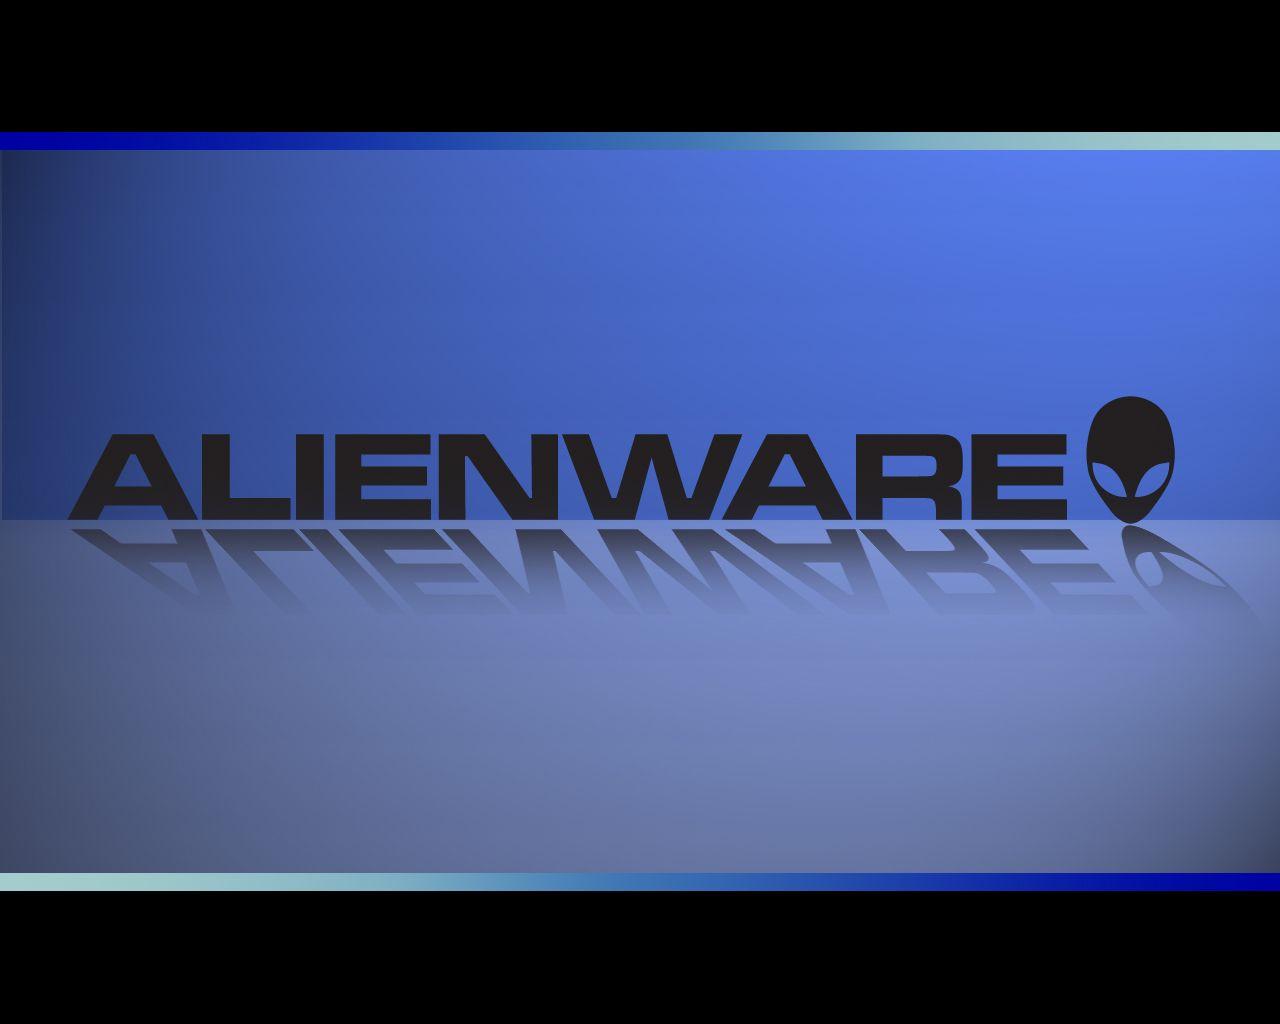 WiP Alienware Wallpaper Customization, Tips and Tweaks